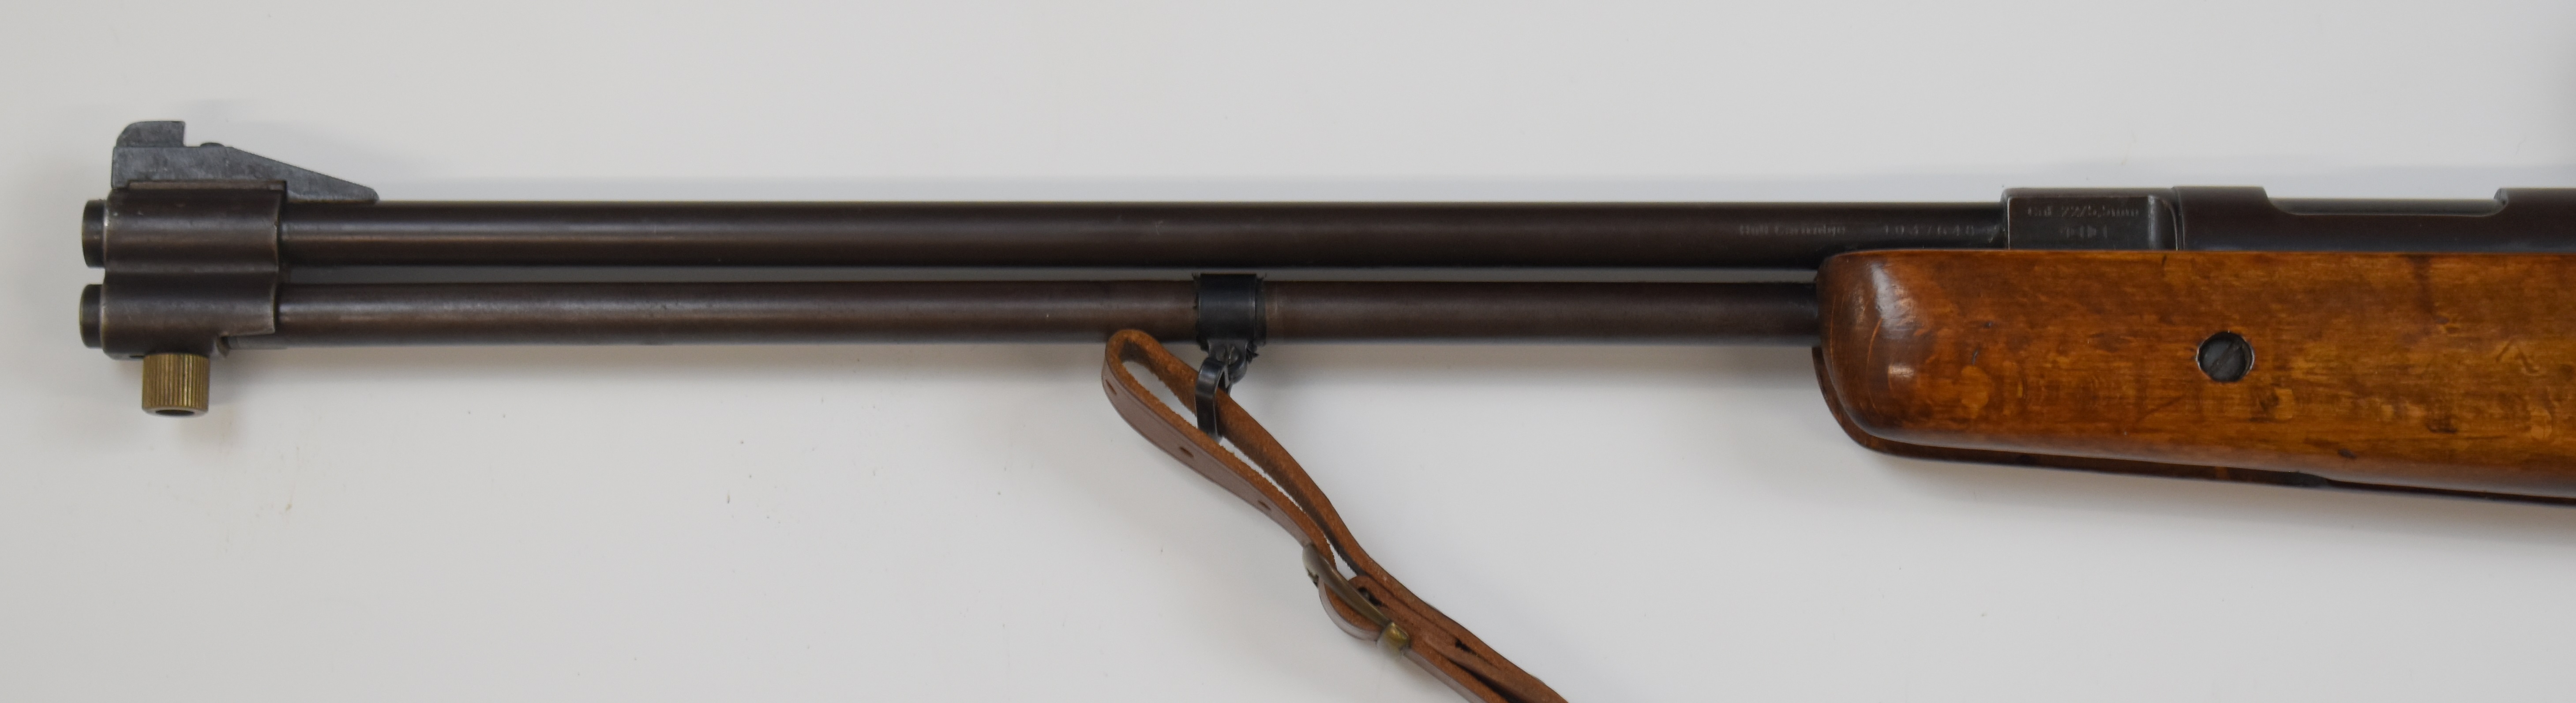 Weirauch HW77 .22 underlever air rifle with chequered semi-pistol grip, raised cheek piece, - Image 9 of 9